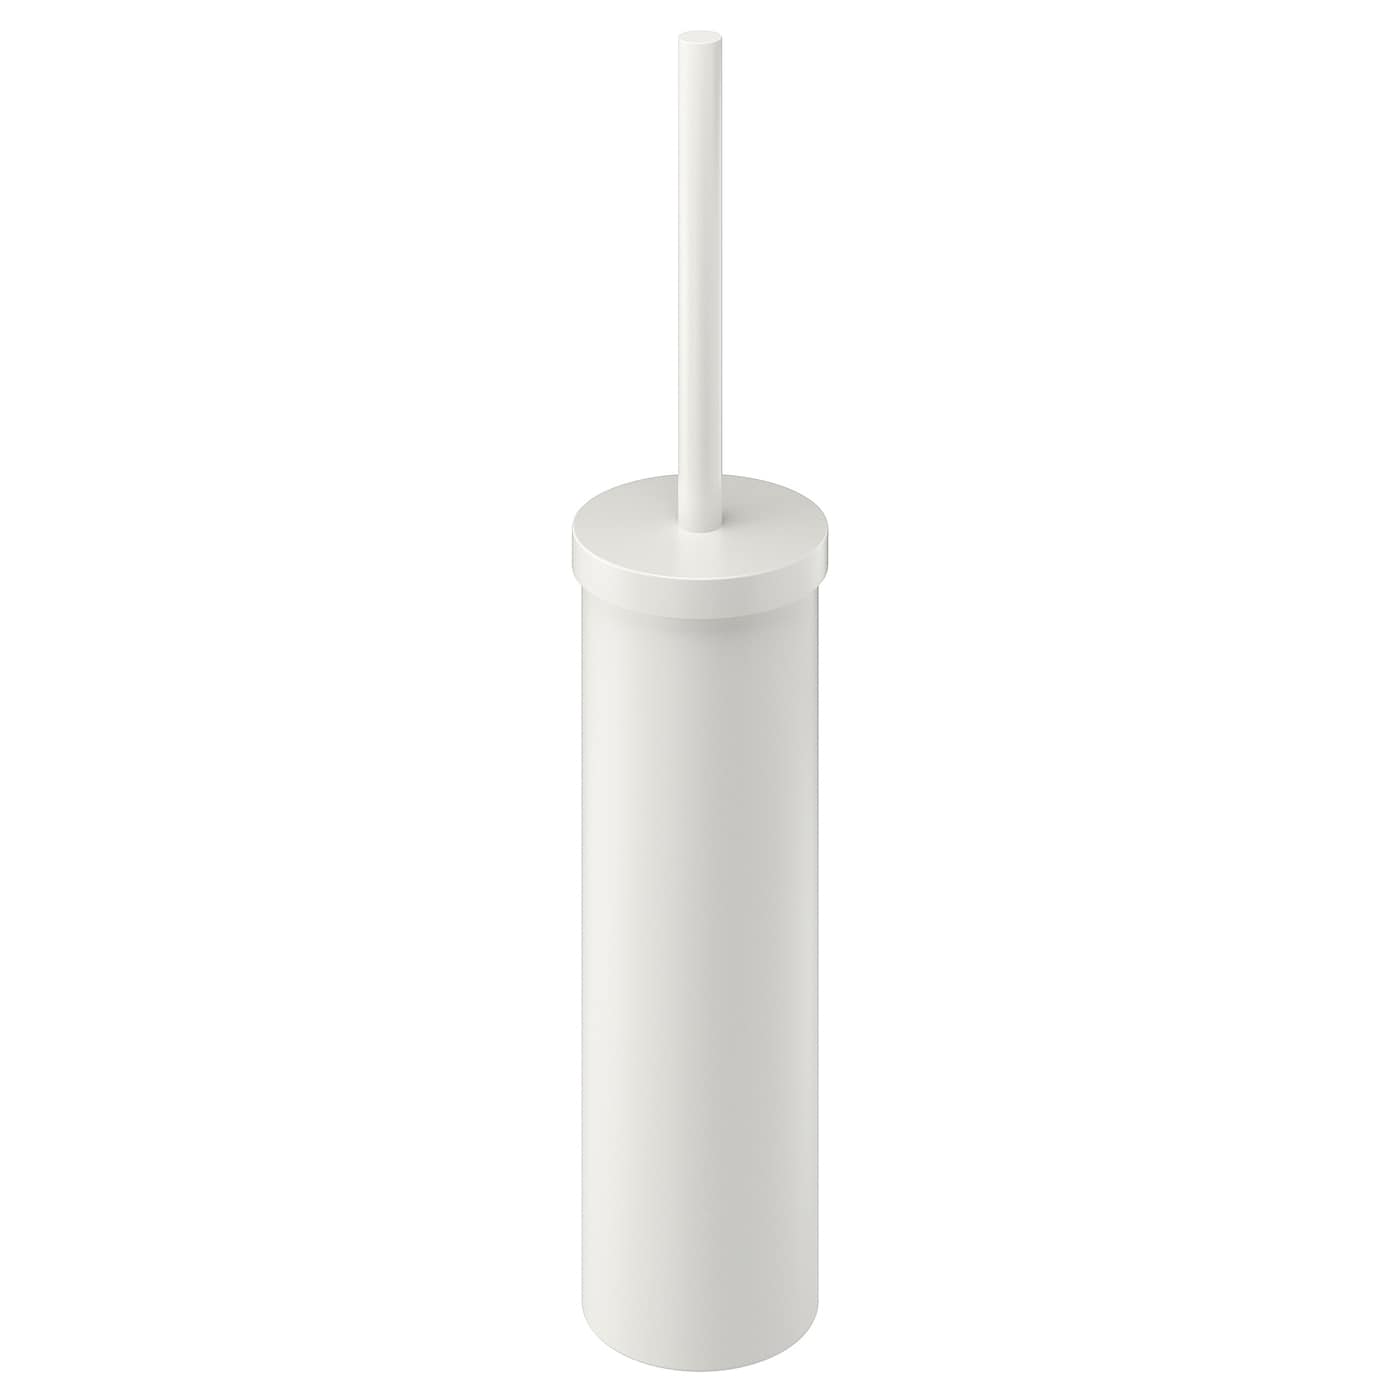 Ершик для унитаза - ENUDDEN IKEA/ ЭНУДДЭН ИКЕА,  48 см, белый